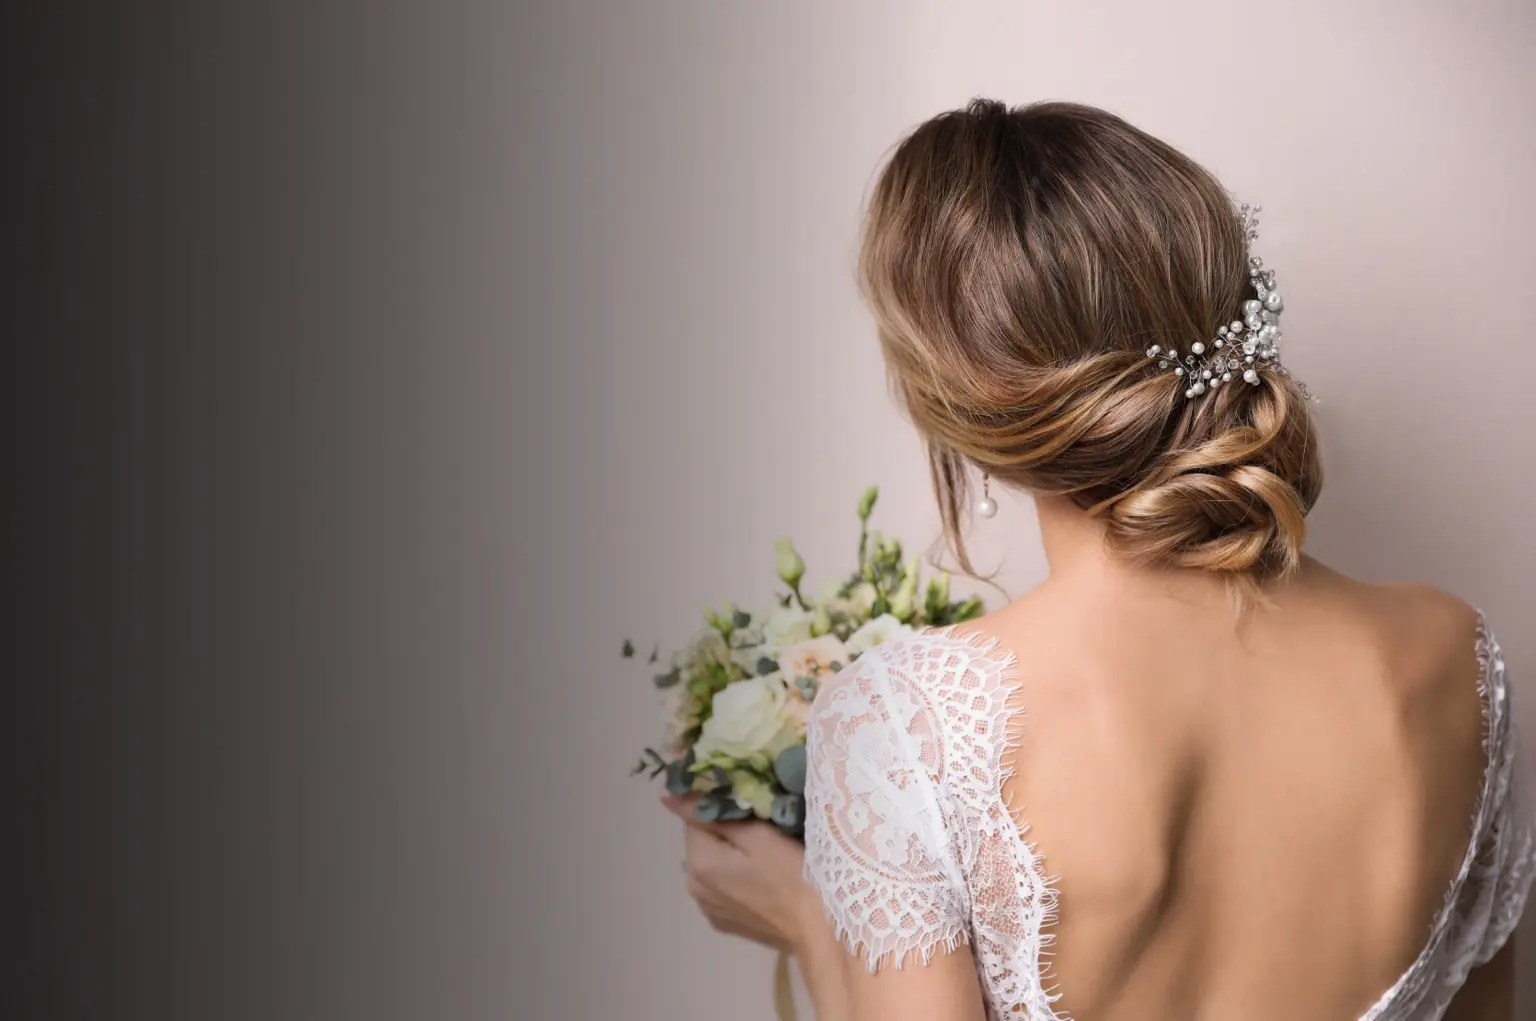 Bridal Hair Services